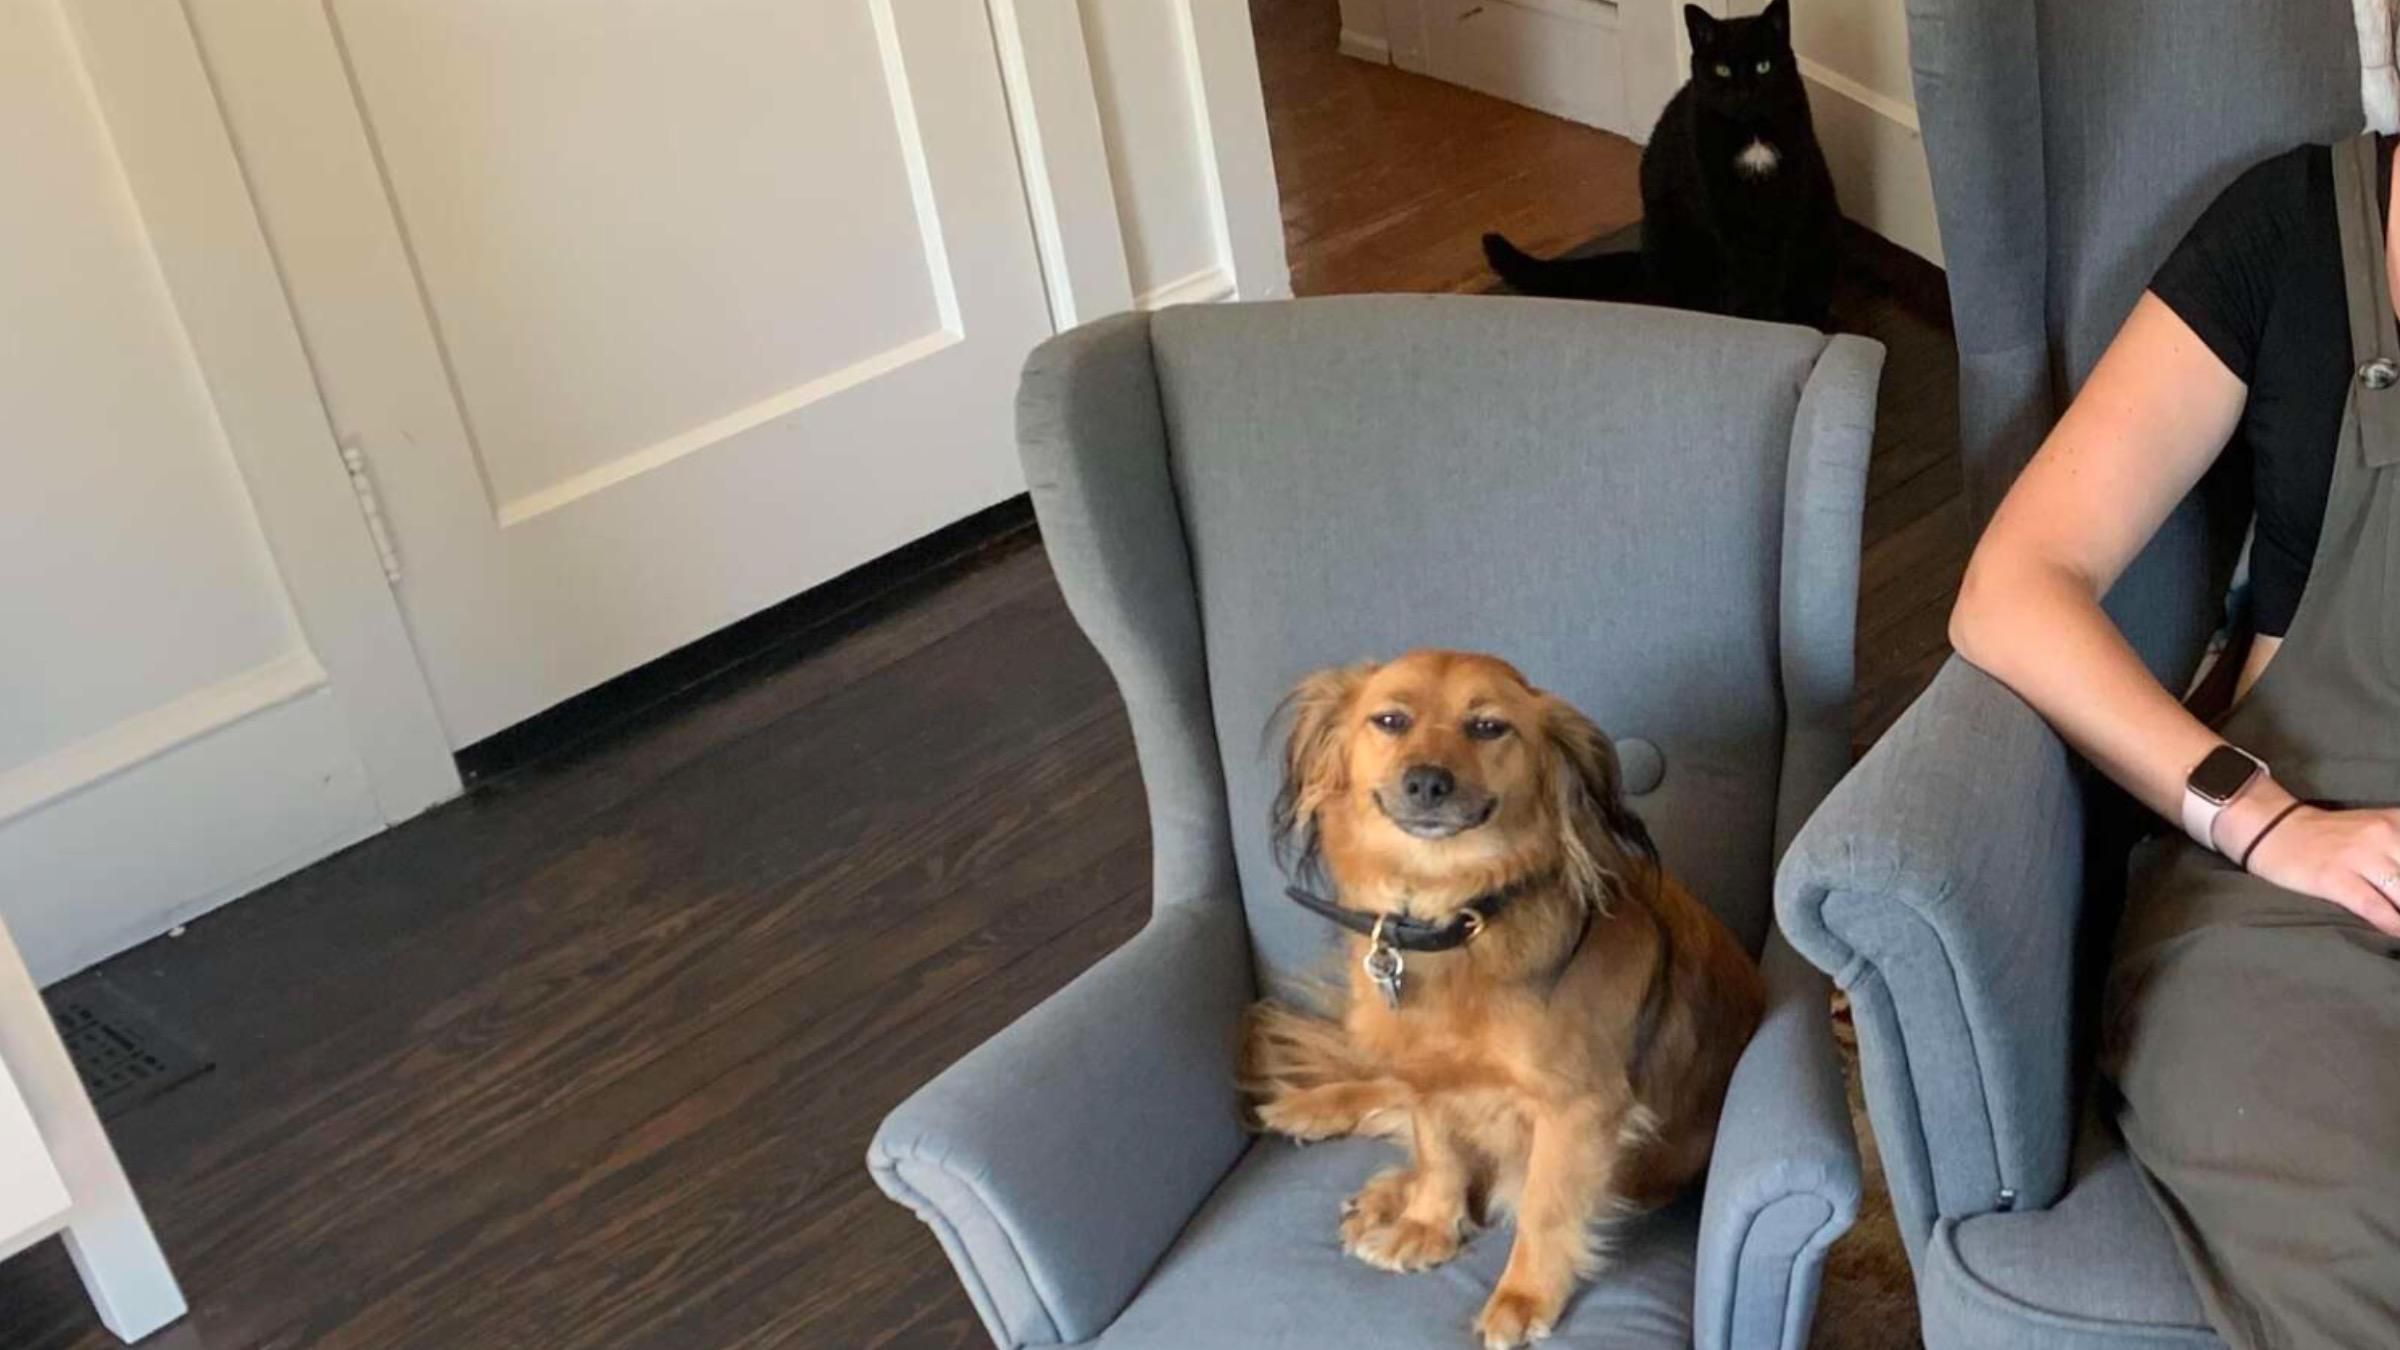 Постоянно требовал внимания: зачем хозяйка купила для собаки копию своего кресла - Pets